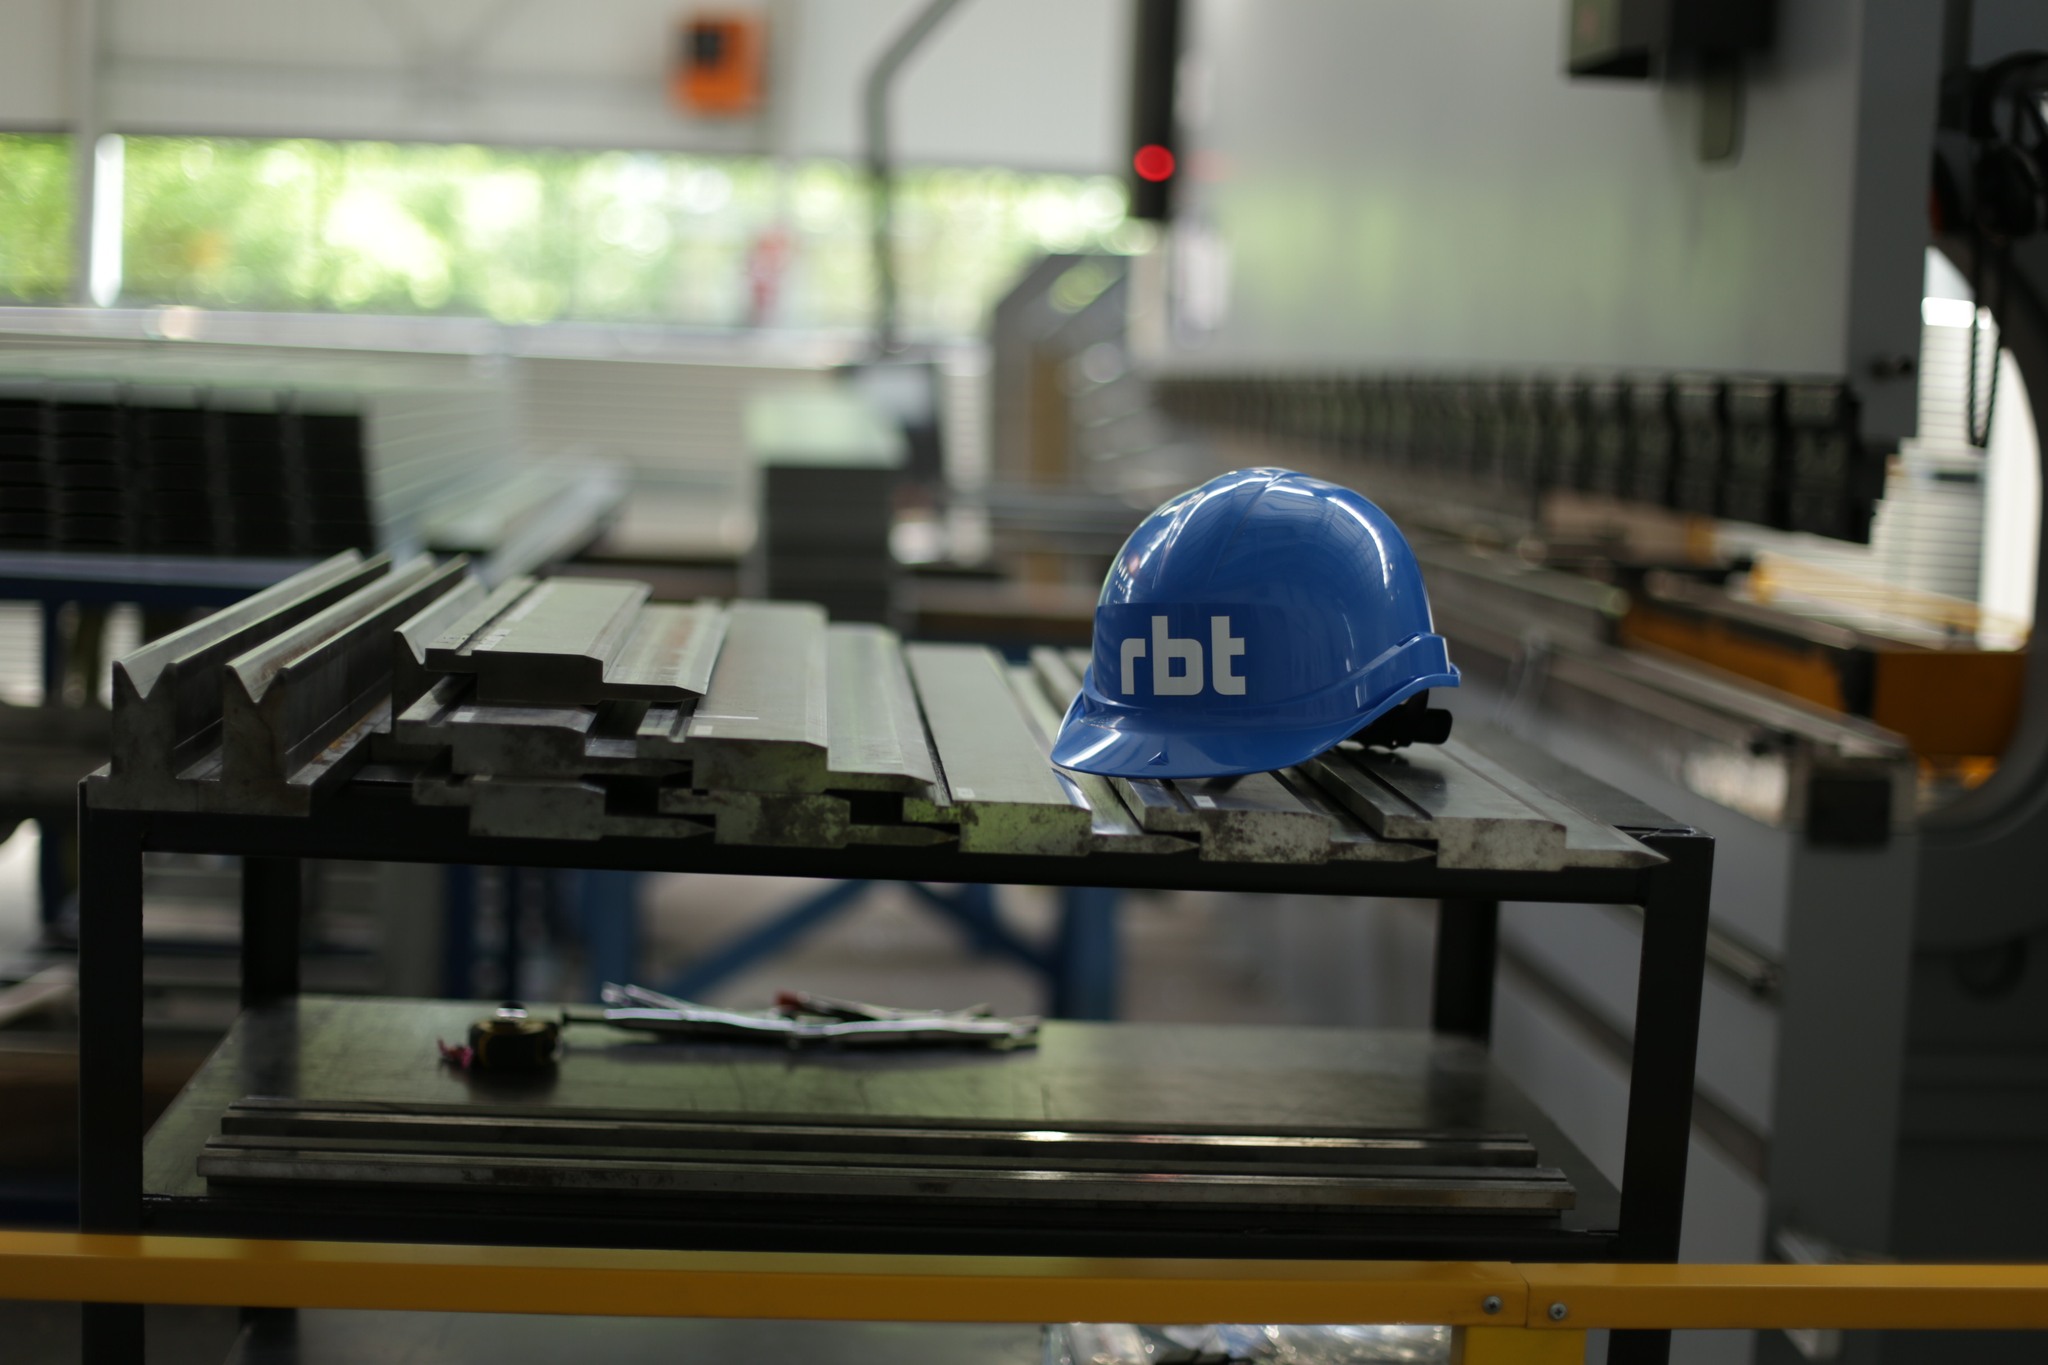 Rex-Bud rozbuduje fabrykę kształtowników RBT w Zgierzu